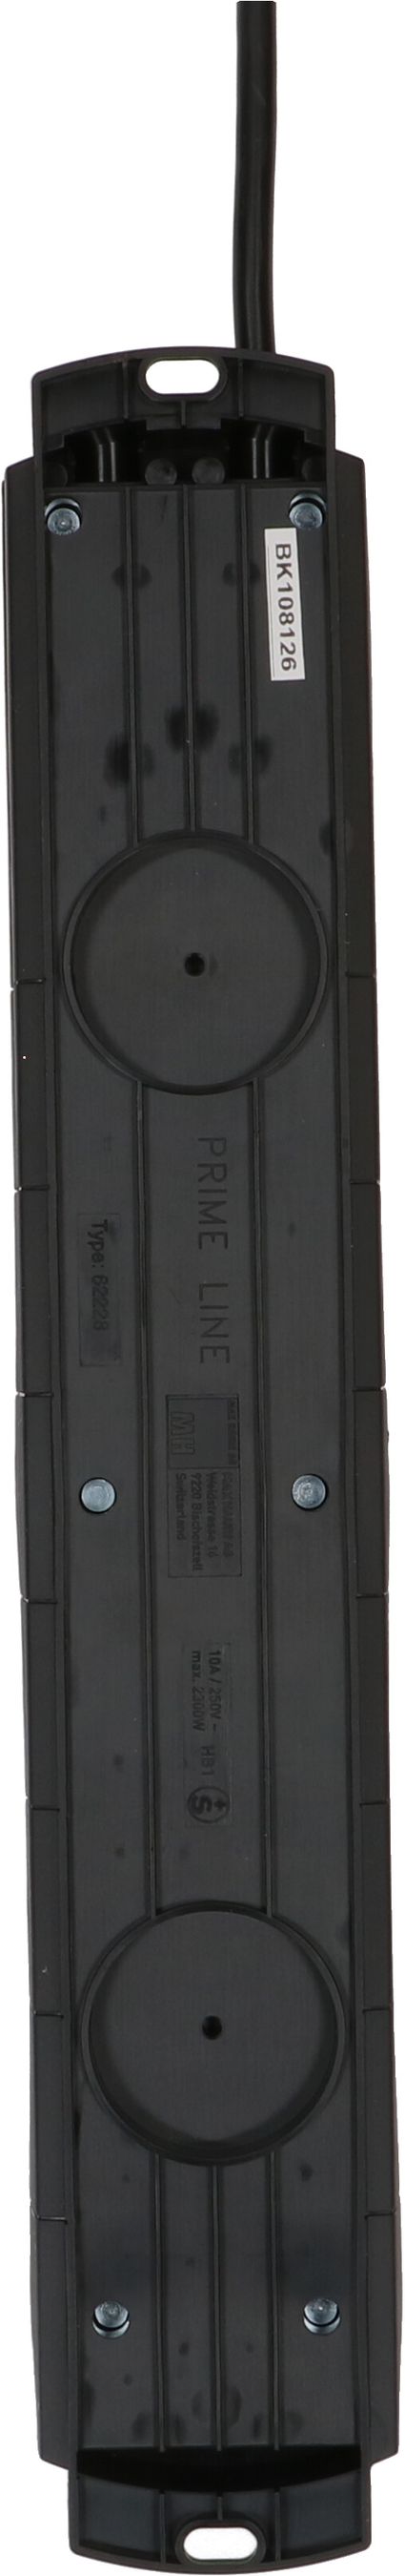 multipresa Prime Line 8x tipo 13 nero 3m